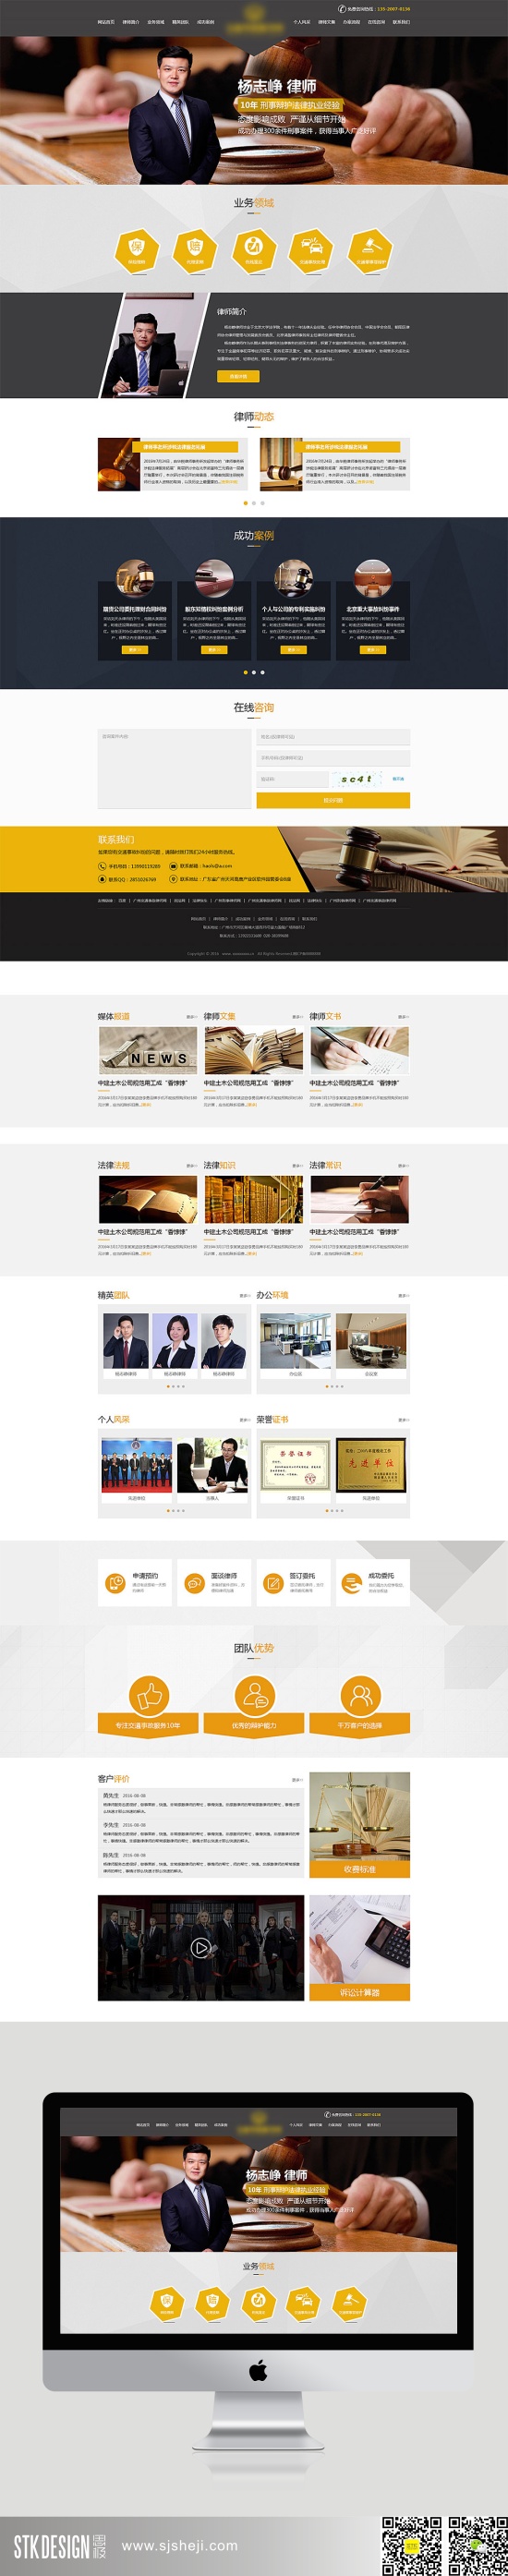 岳成律师事务所网页设计